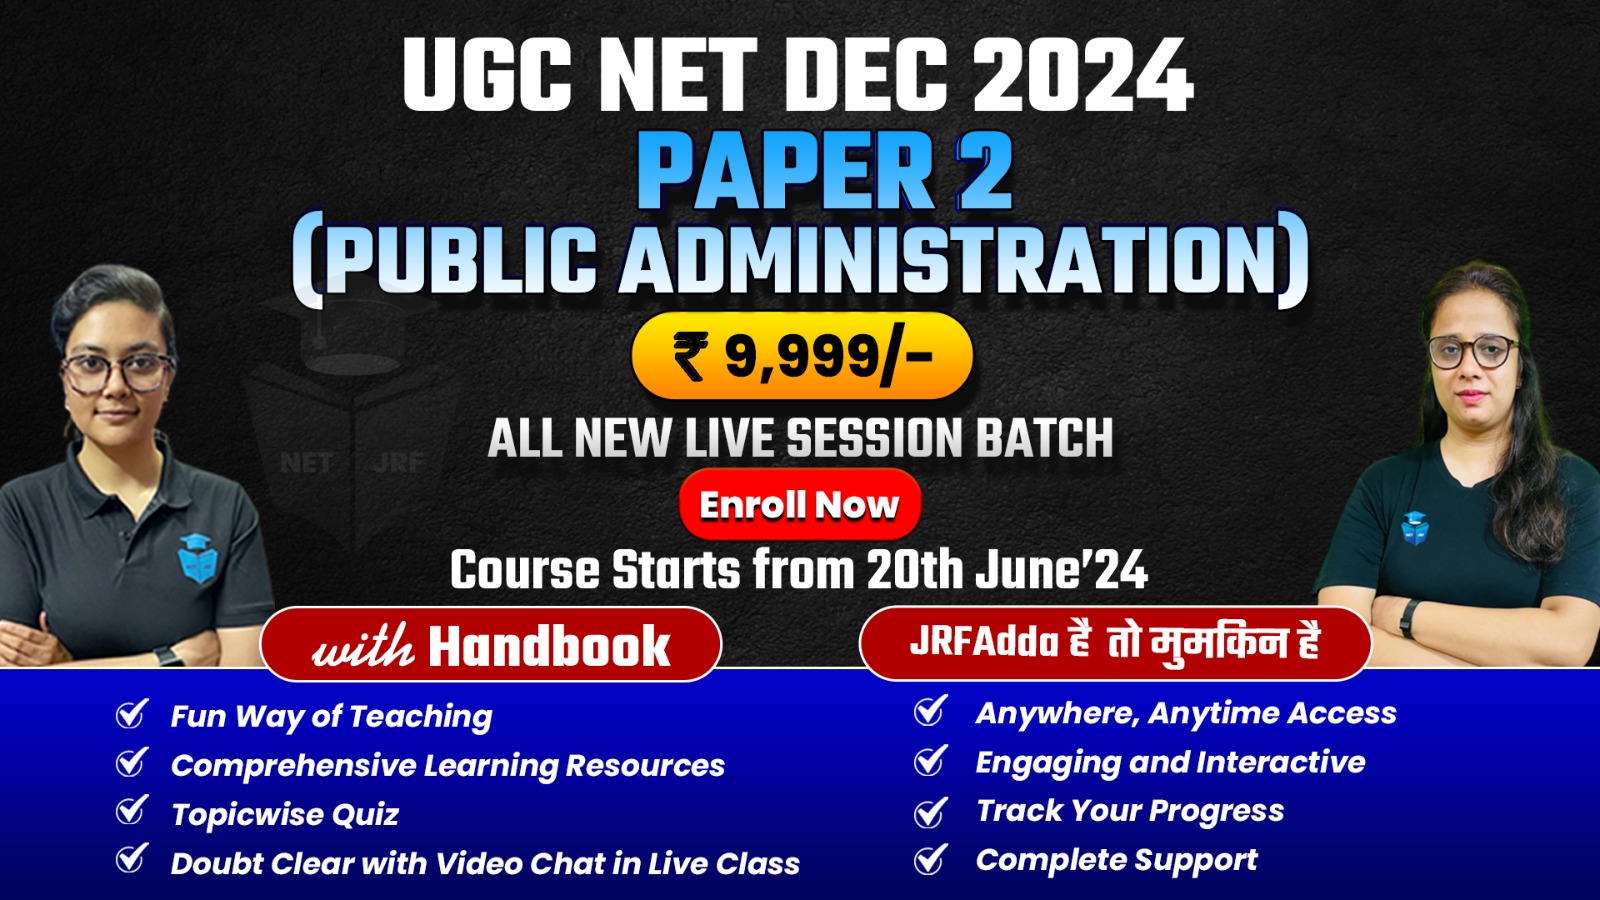 Dec 2024 UGC NET Complete Public Administration Batch Paper 2